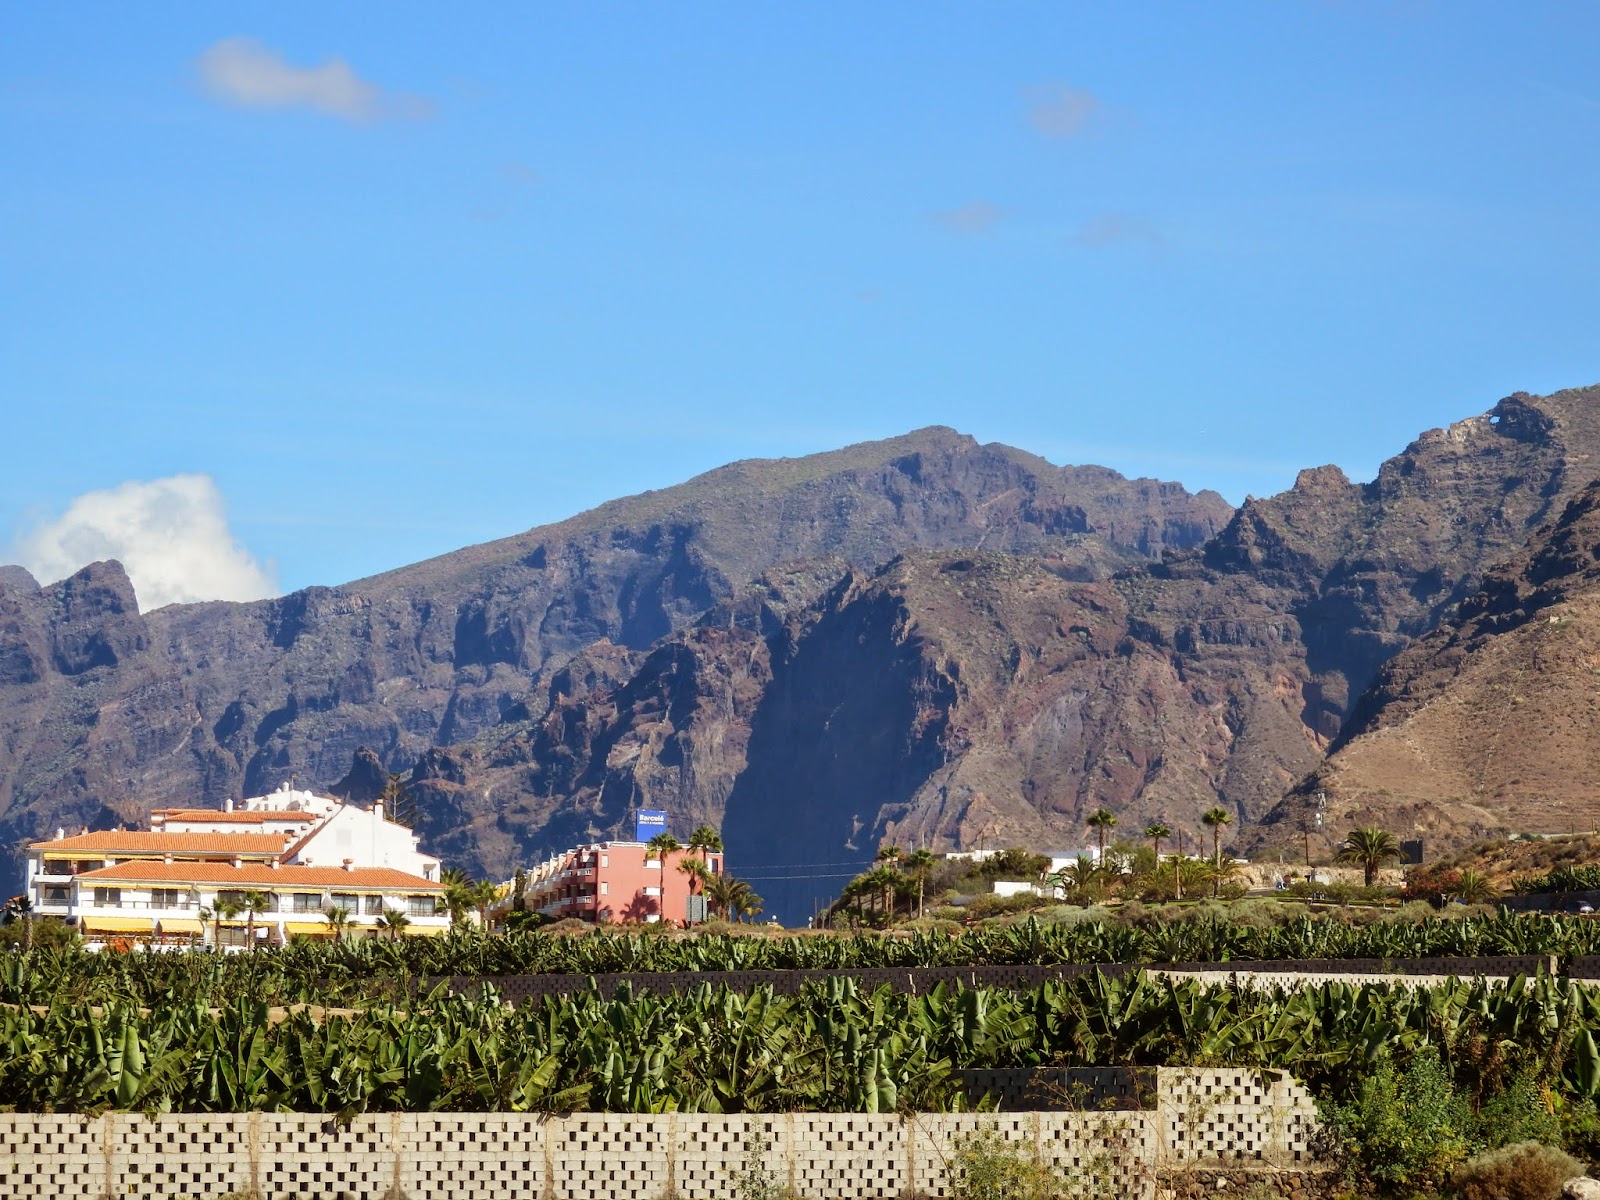 Mountains of Tenerife